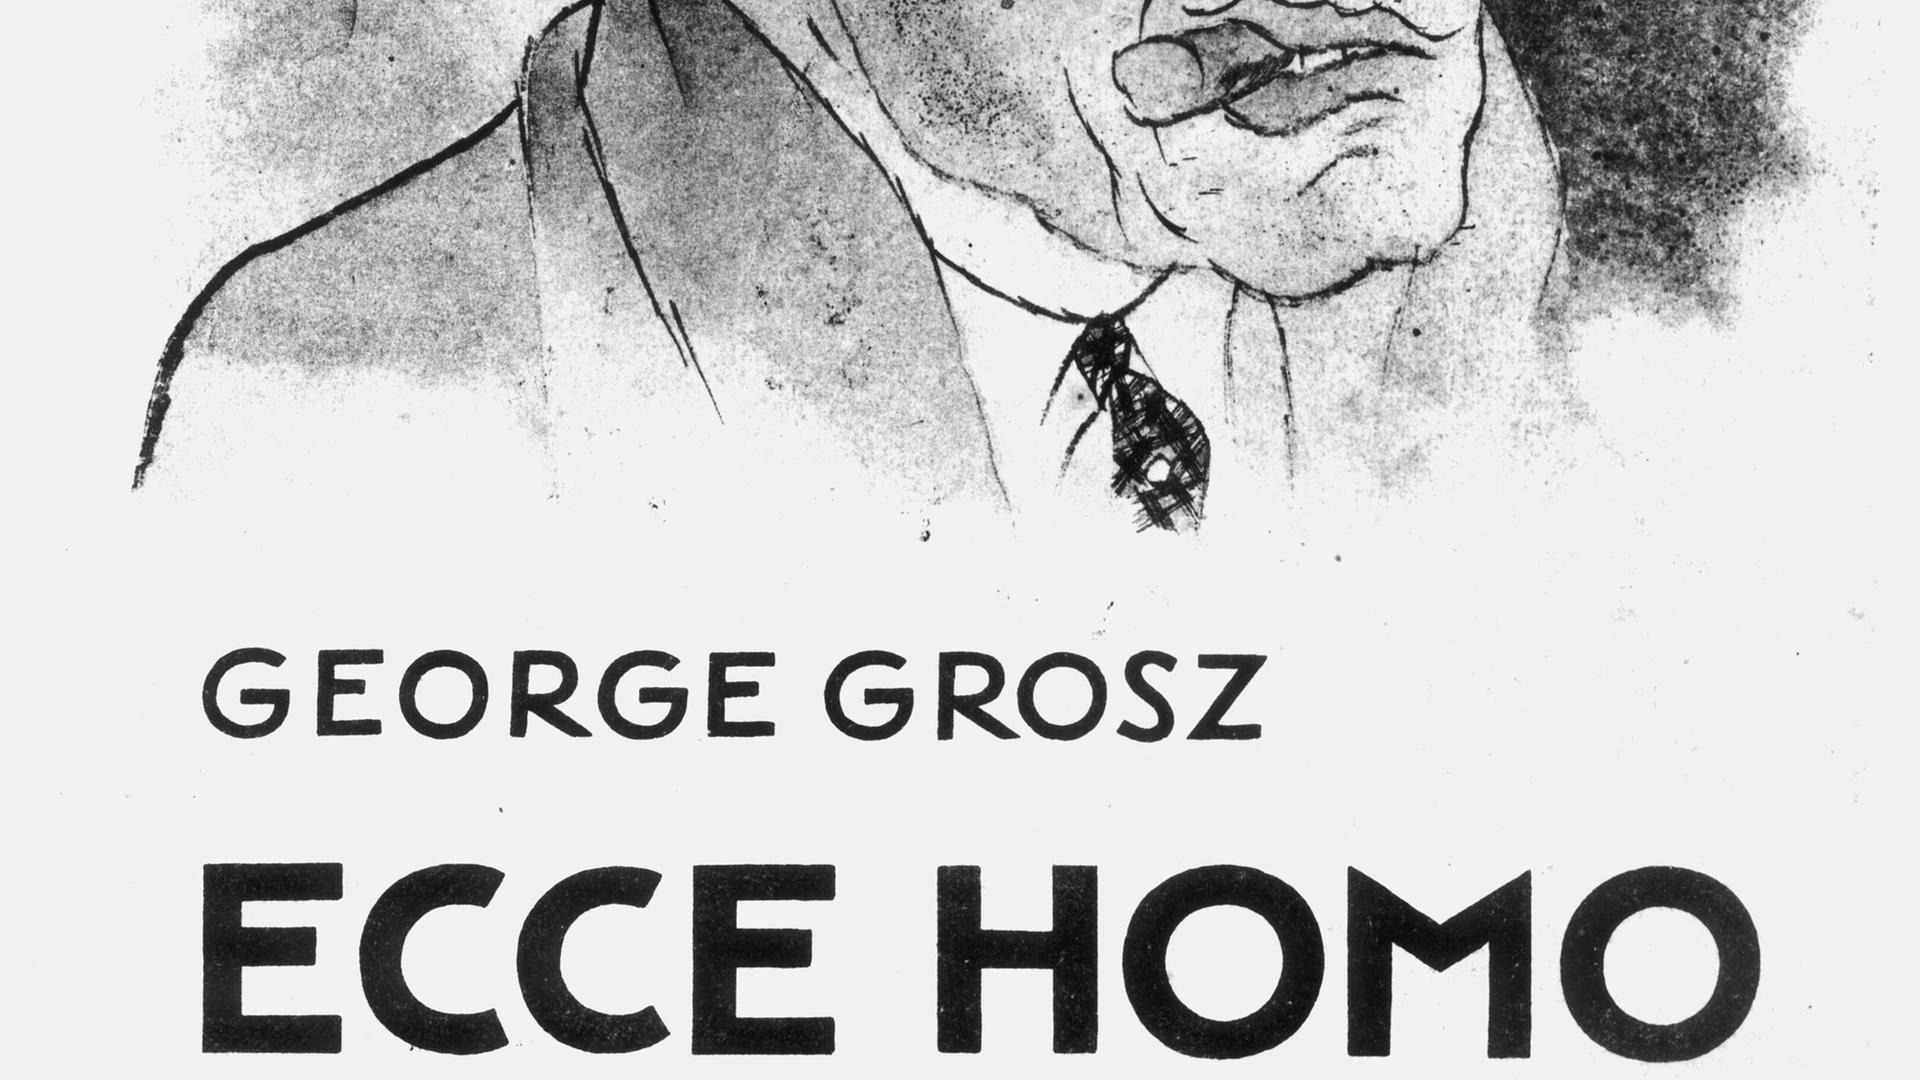 Ausschnitt des Titelblatts der Grafik-Folge "Ecce Homo" des Karikaturisten George Grosz aus dem Jahr 1923